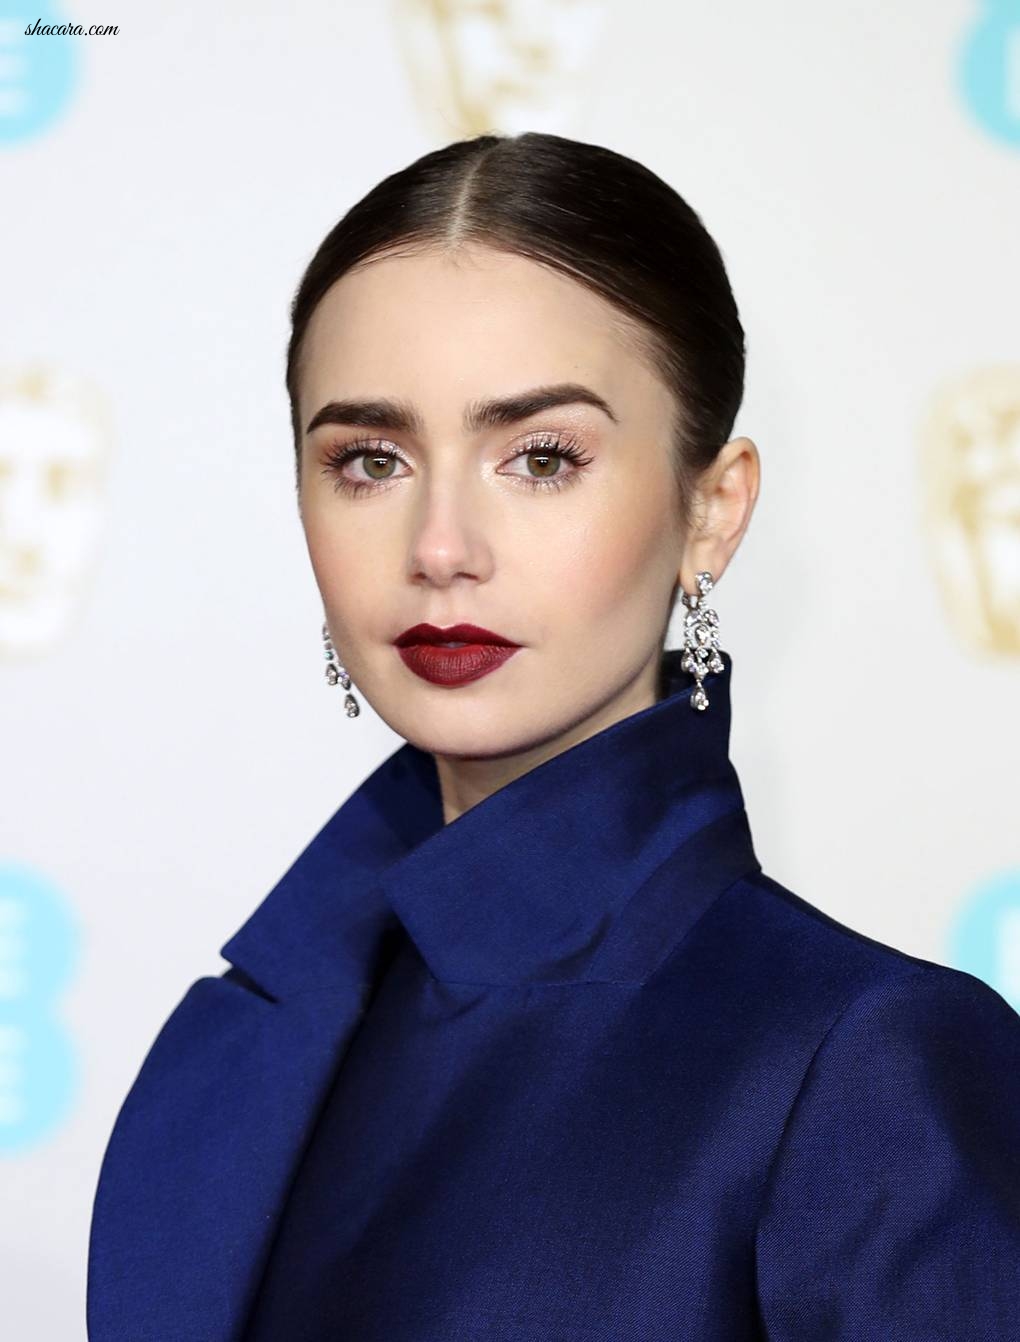 BAFTAs 2019: Best Beauty Looks